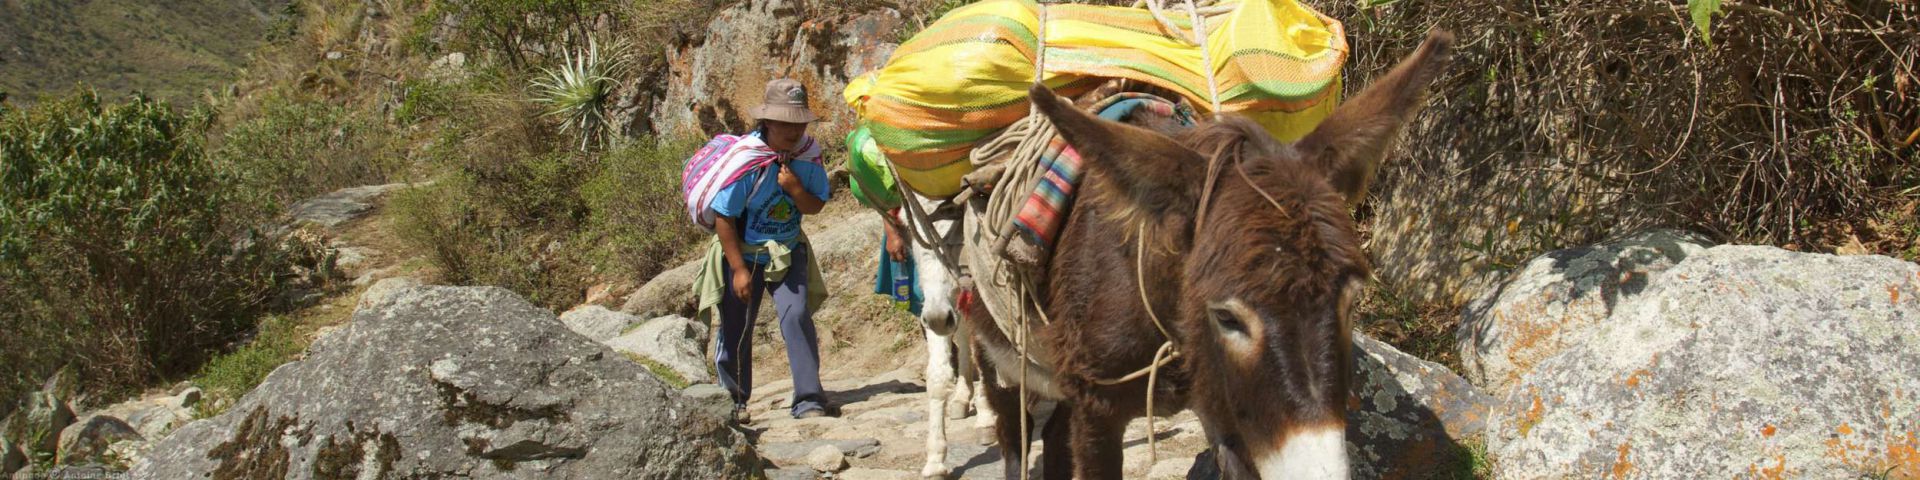 Chemin de l'Inca | MachuPicchu